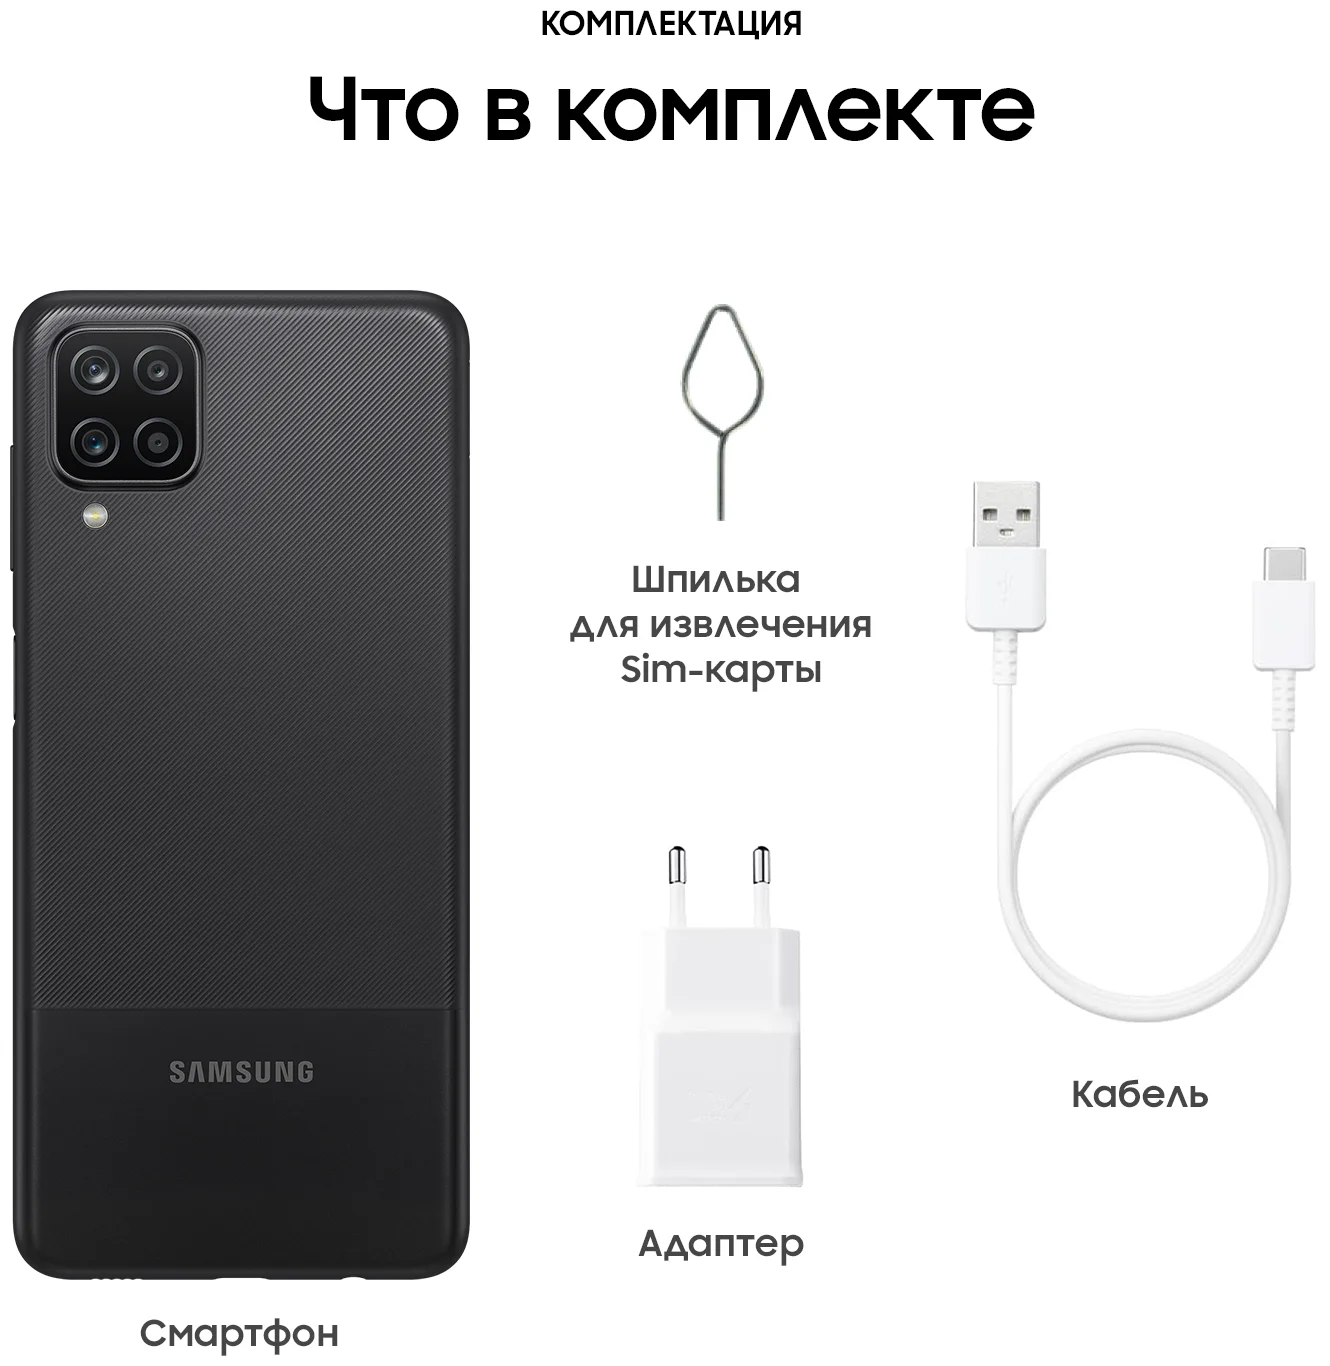 Samsung Galaxy A12 (SM-A127) - стандарт связи: 4G LTE, 3G